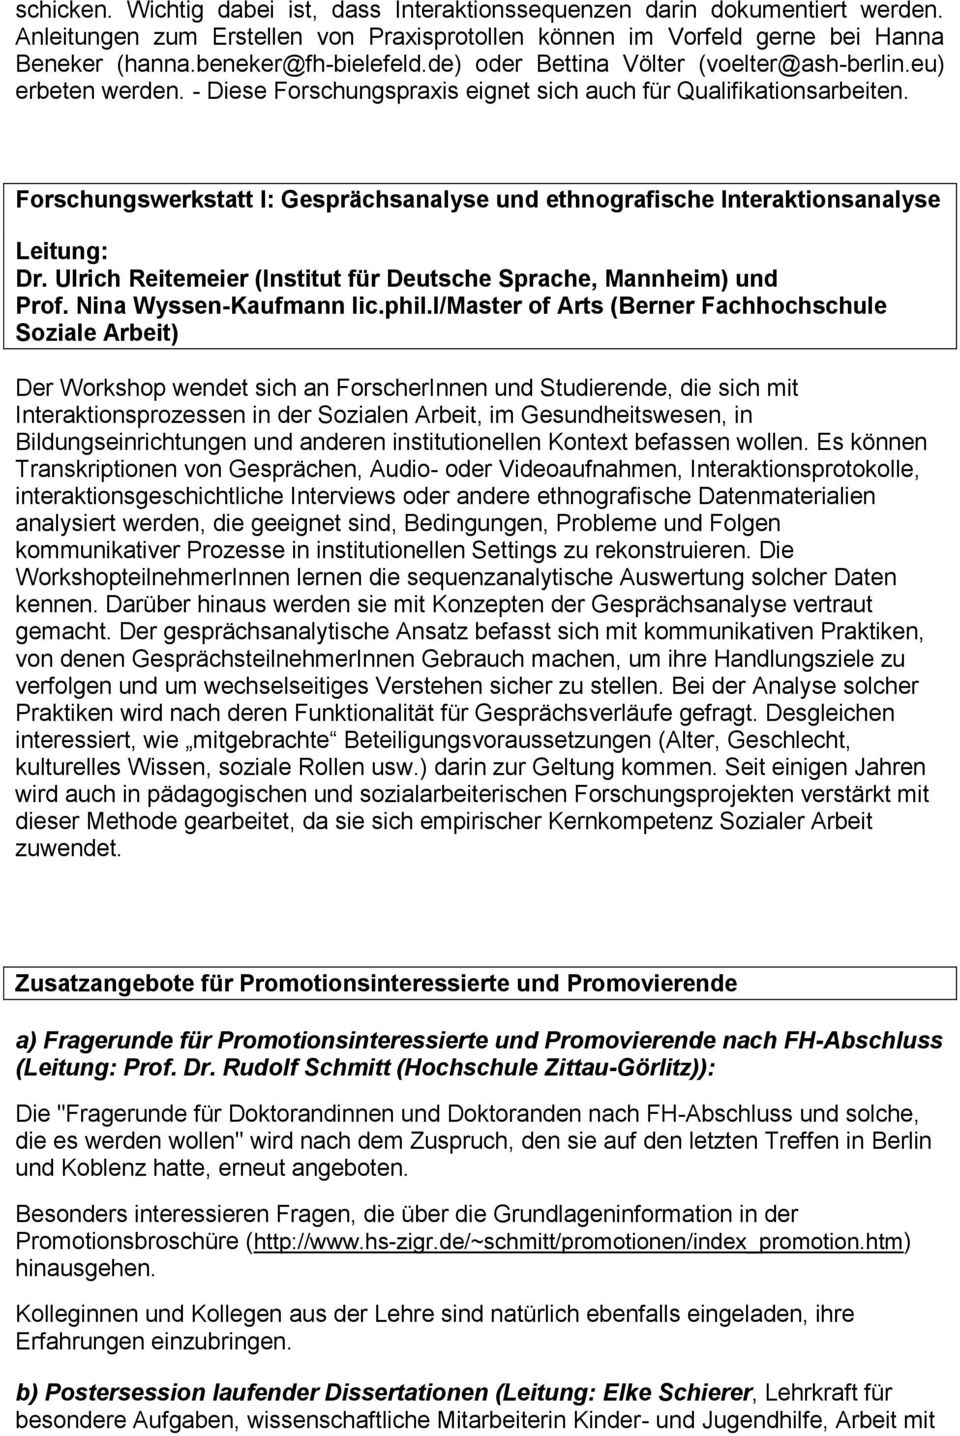 Forschungswerkstatt I: Gesprächsanalyse und ethnografische Interaktionsanalyse Dr. Ulrich Reitemeier (Institut für Deutsche Sprache, Mannheim) und Prof. Nina Wyssen-Kaufmann lic.phil.